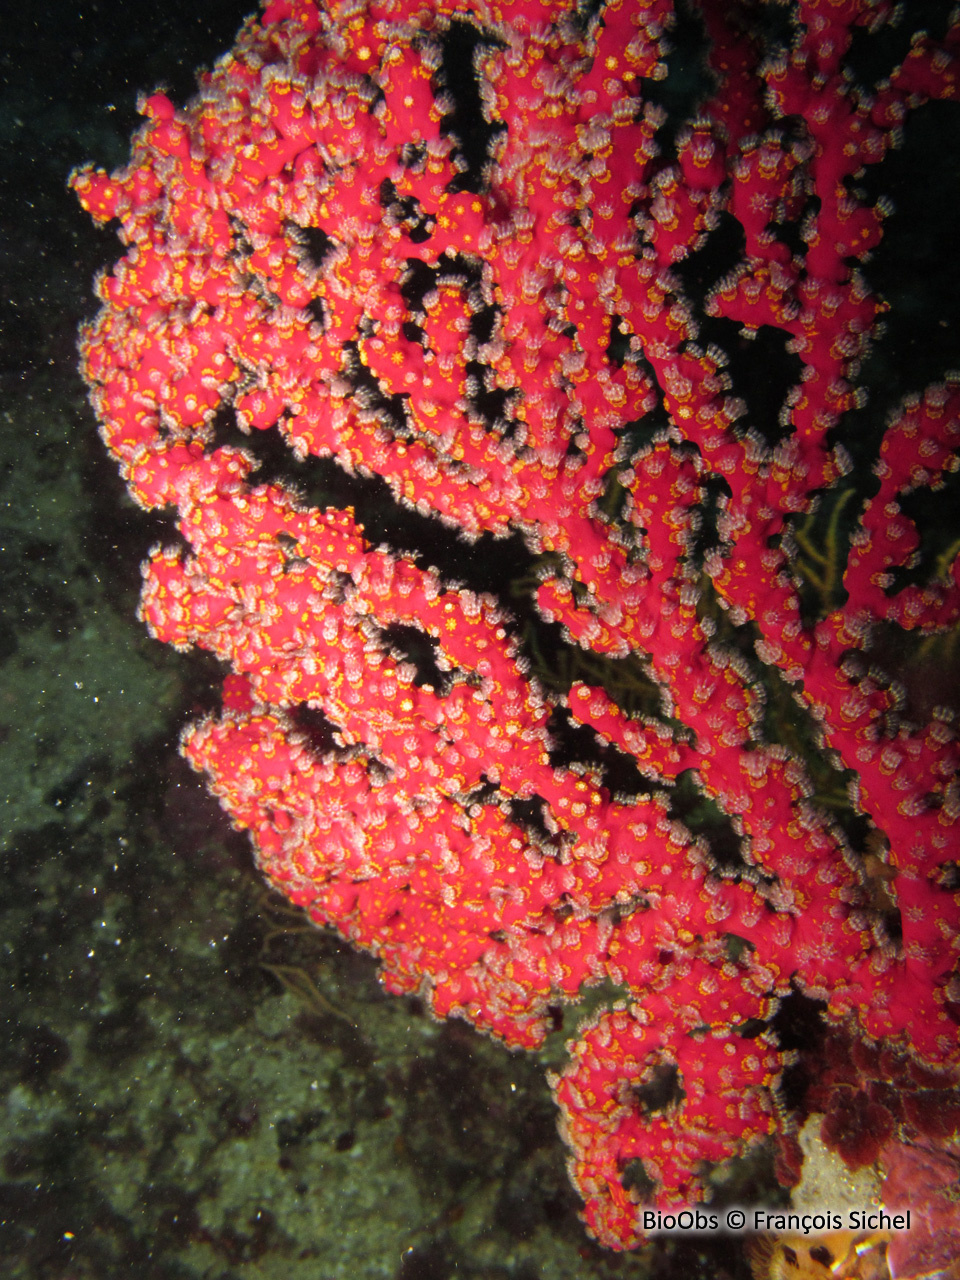 Alcyon encroûtant - Alcyonium coralloides - François Sichel - BioObs